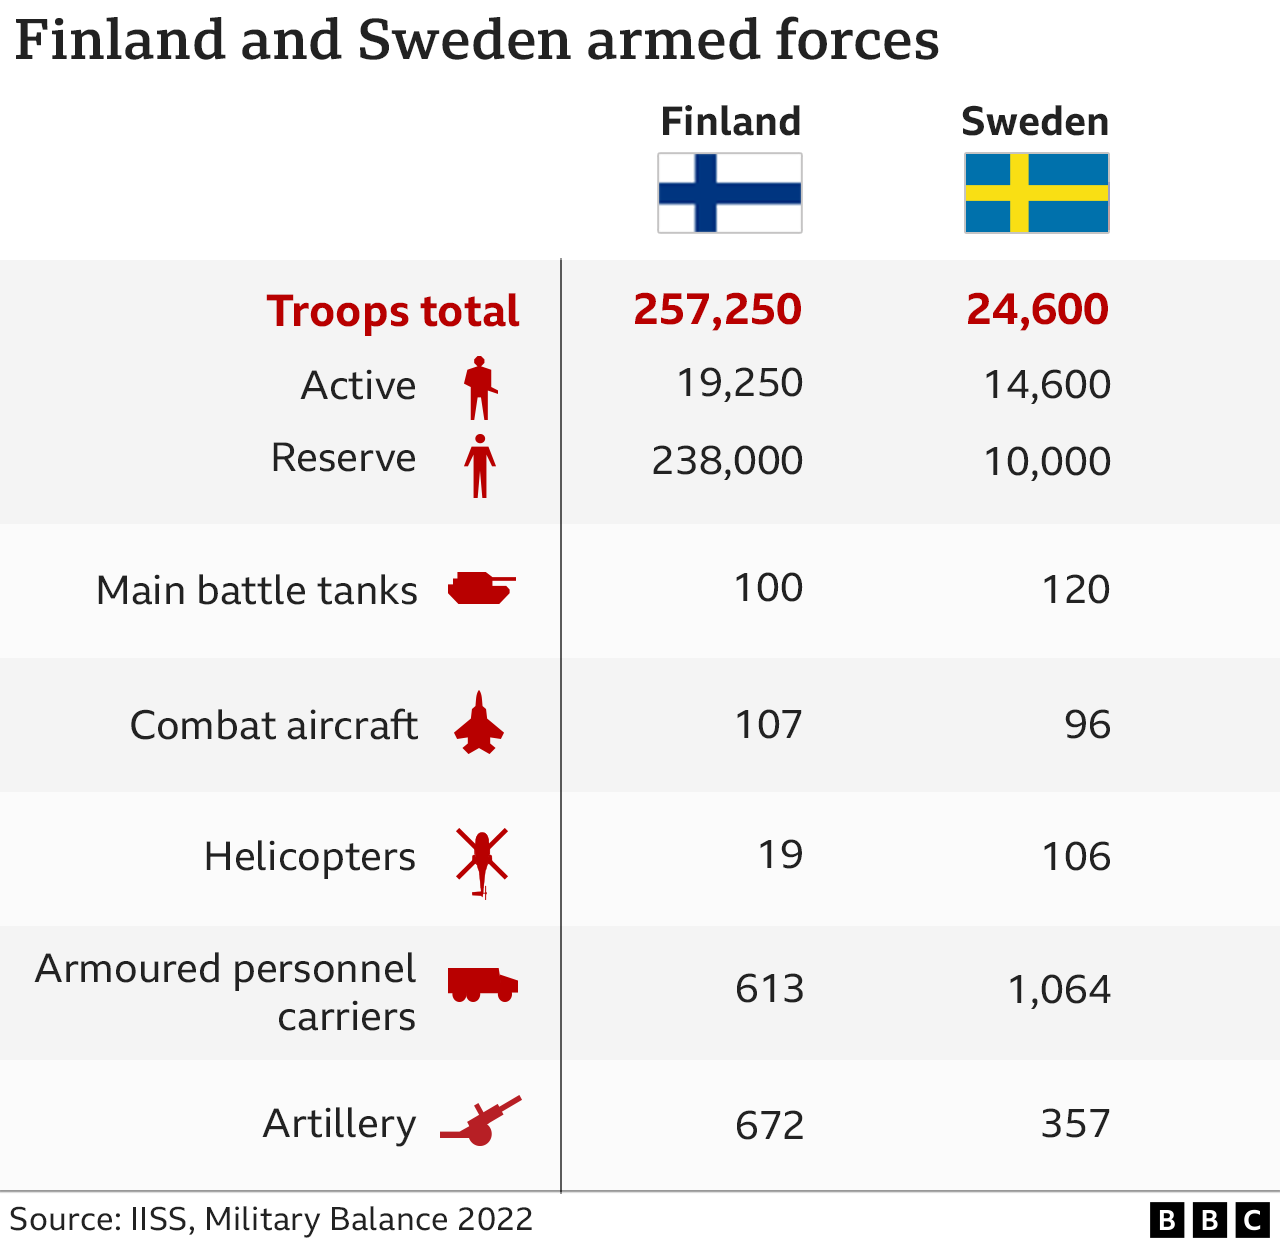 Grafik der finnischen und schwedischen Streitkräfte